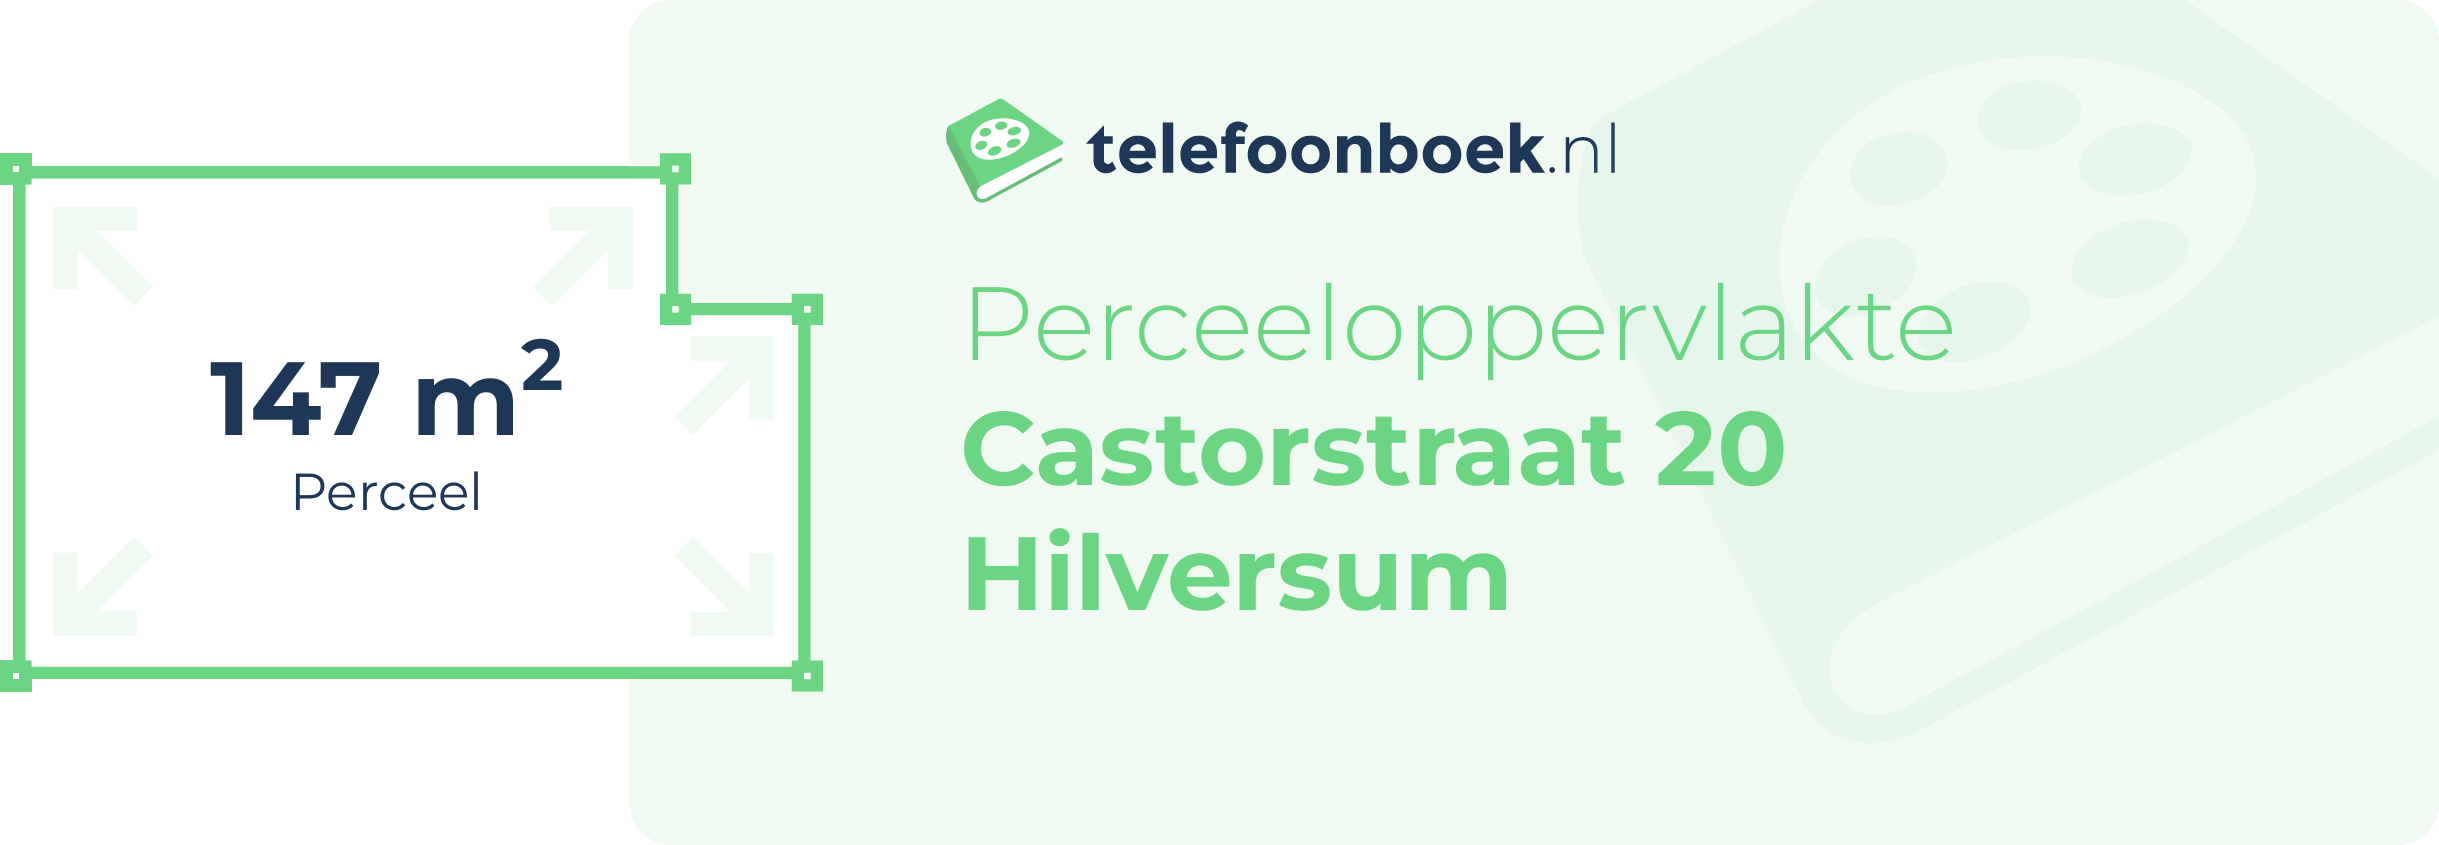 Perceeloppervlakte Castorstraat 20 Hilversum